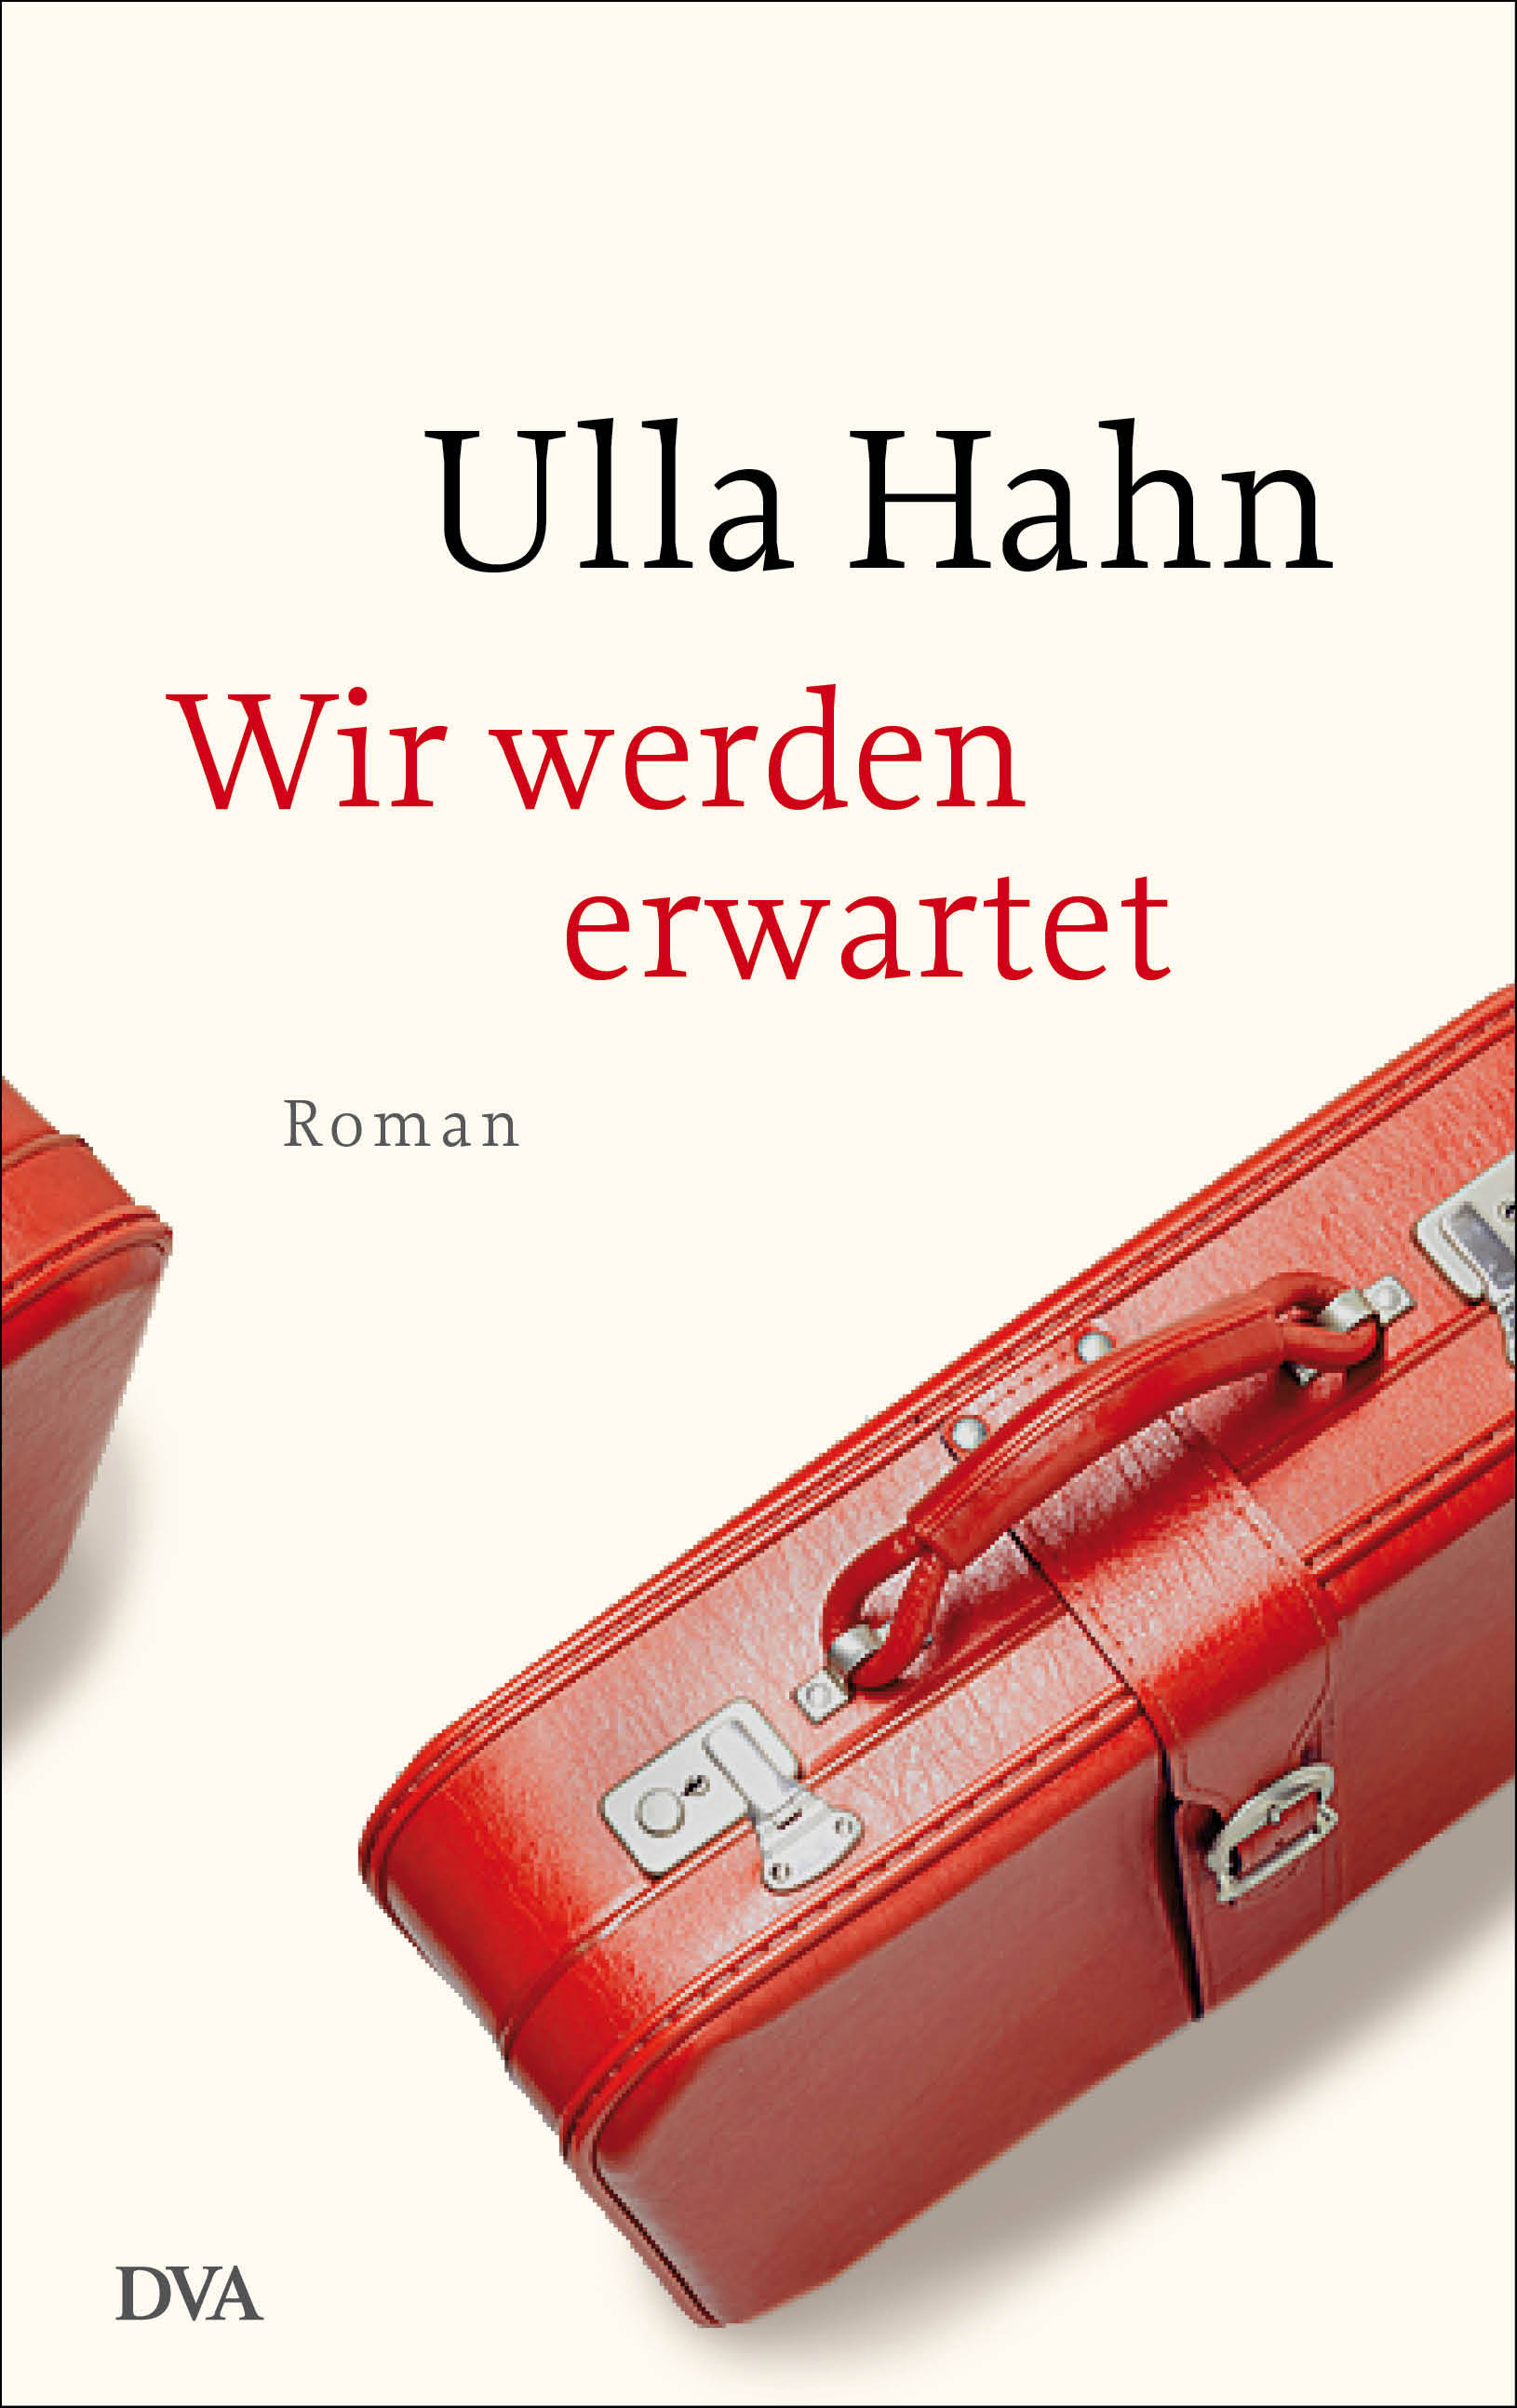 Buchcover: Ulla Hahn: Wir werden erwartet. DVA